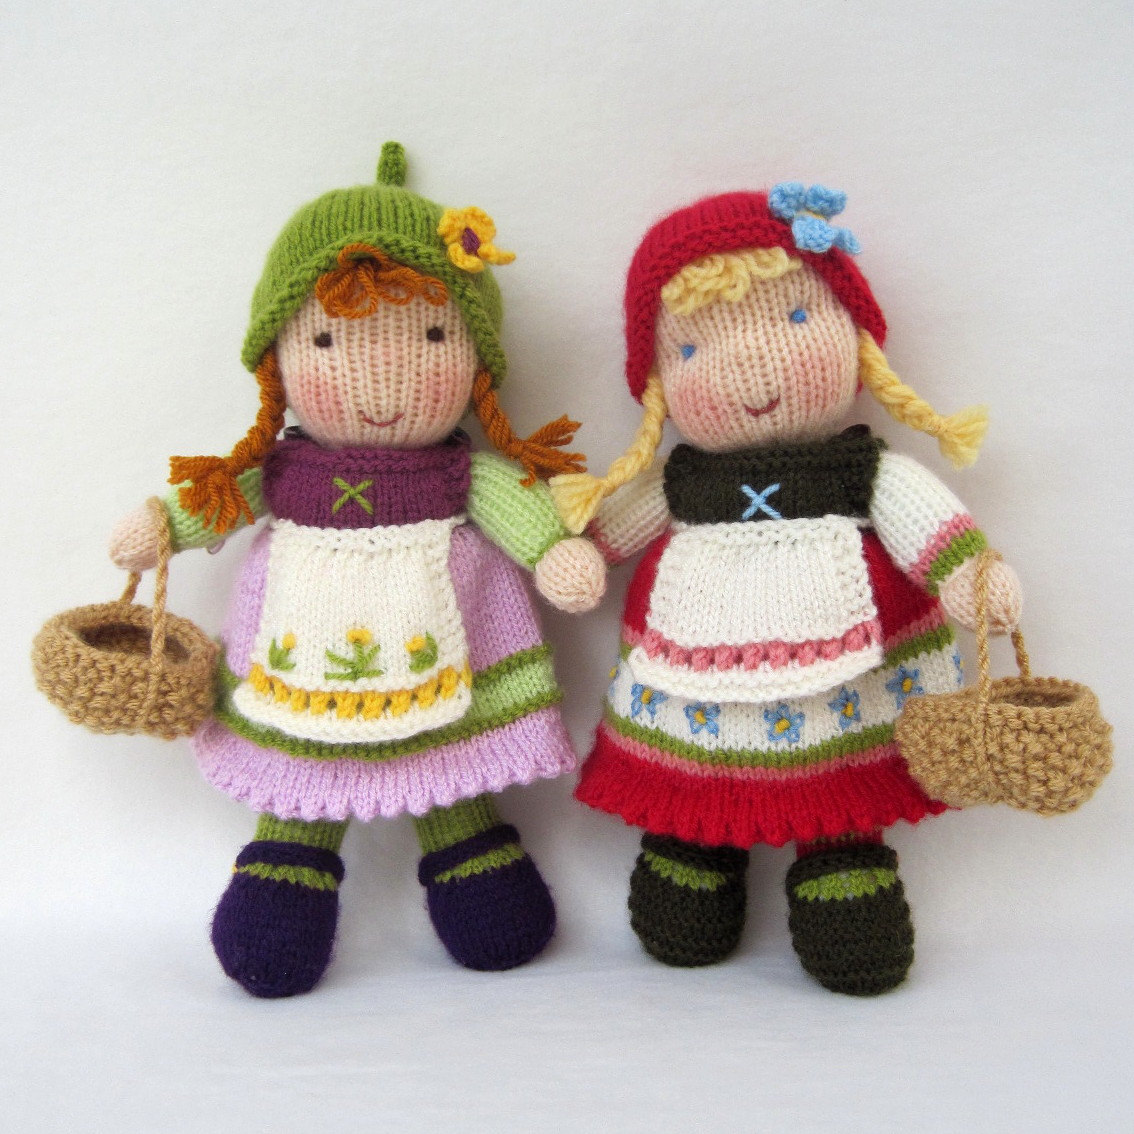 knitting doll knitting-doll-12 gxnqwla